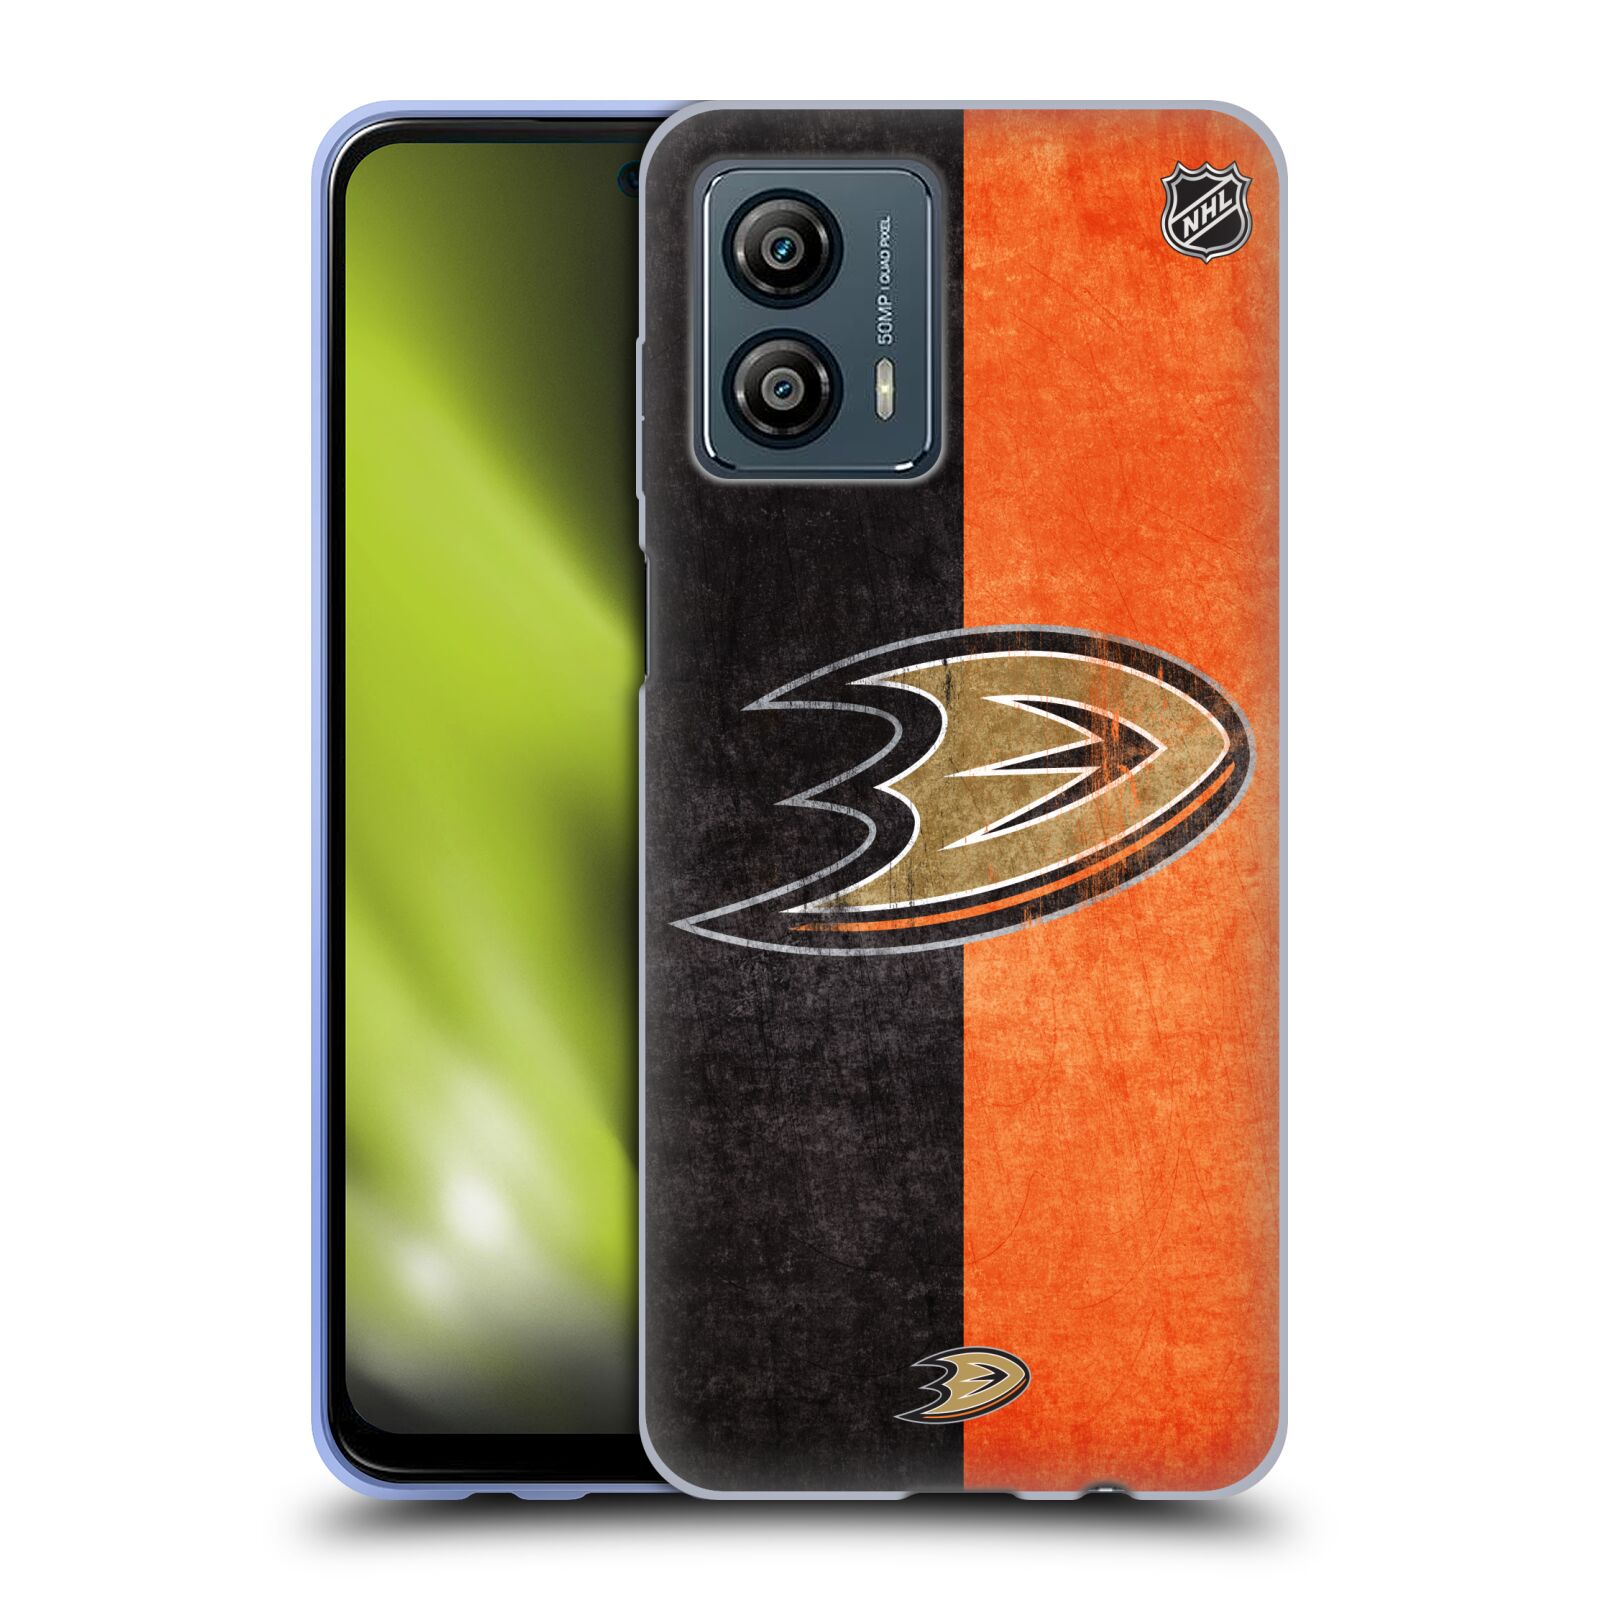 Silikonové pouzdro na mobil Motorola Moto G53 5G - NHL - Půlené logo Anaheim Ducks (Silikonový kryt, obal, pouzdro na mobilní telefon Motorola Moto G53 5G s licencovaným motivem NHL - Půlené logo Anaheim Ducks)